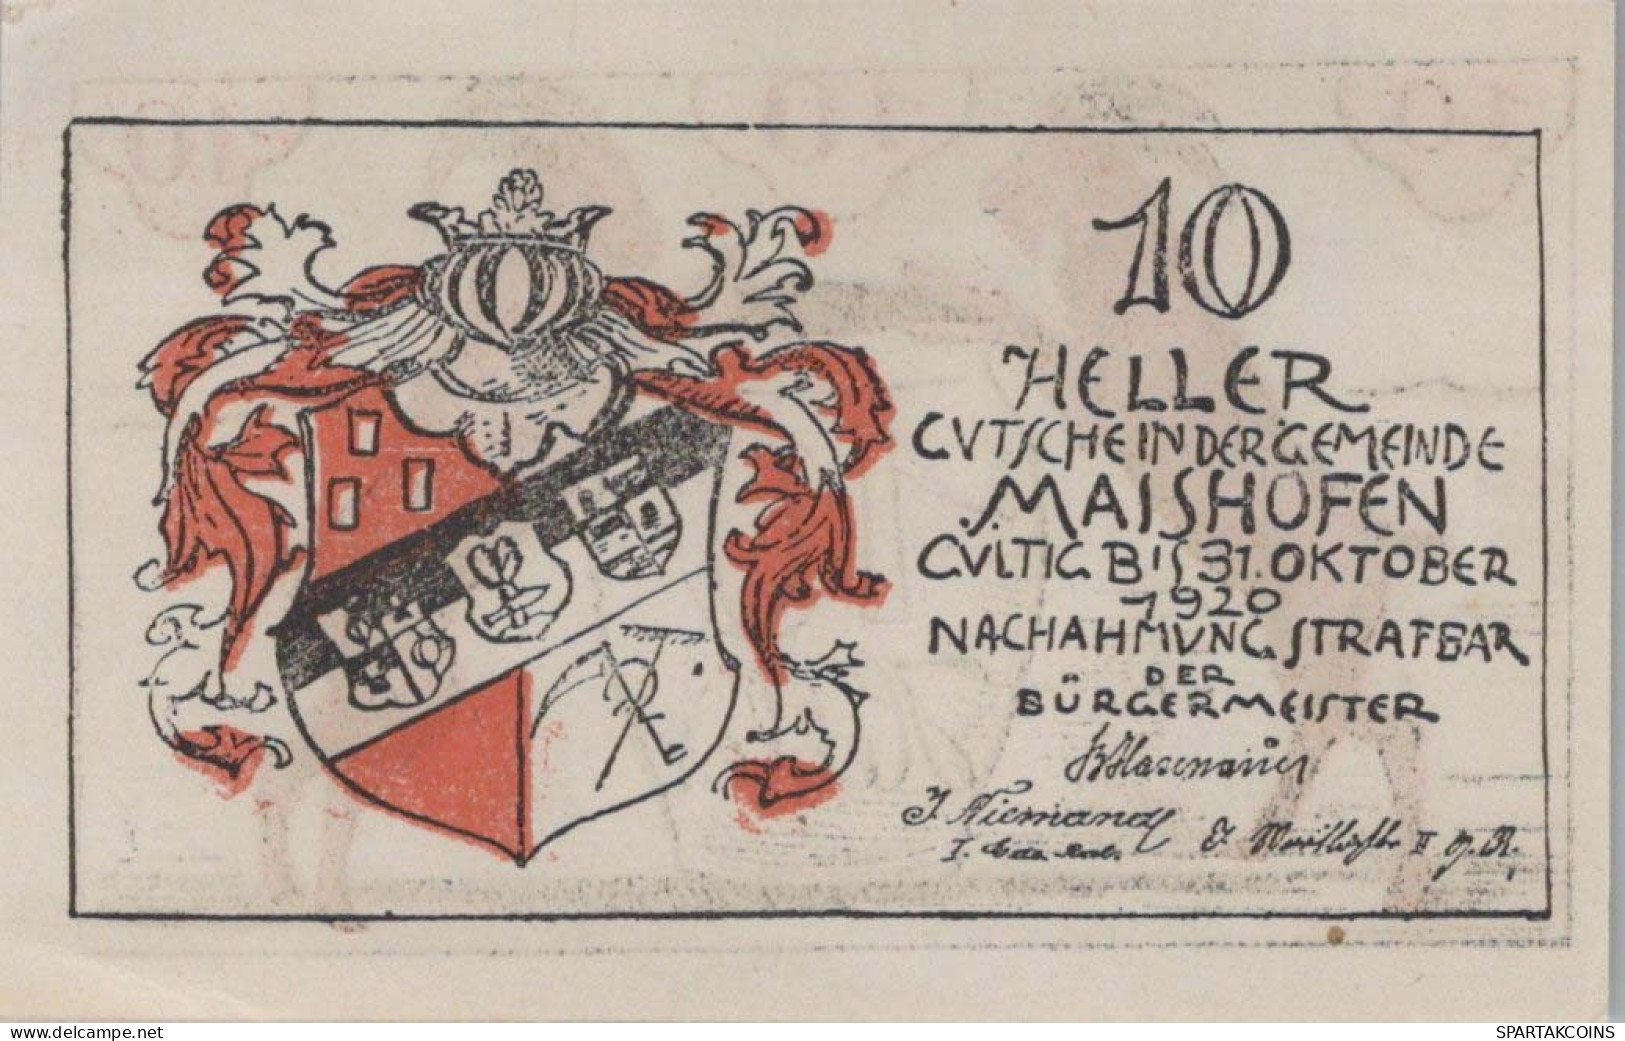 10 HELLER 1920 Stadt MAISHOFEN Salzburg Österreich Notgeld Papiergeld Banknote #PG944 - [11] Local Banknote Issues